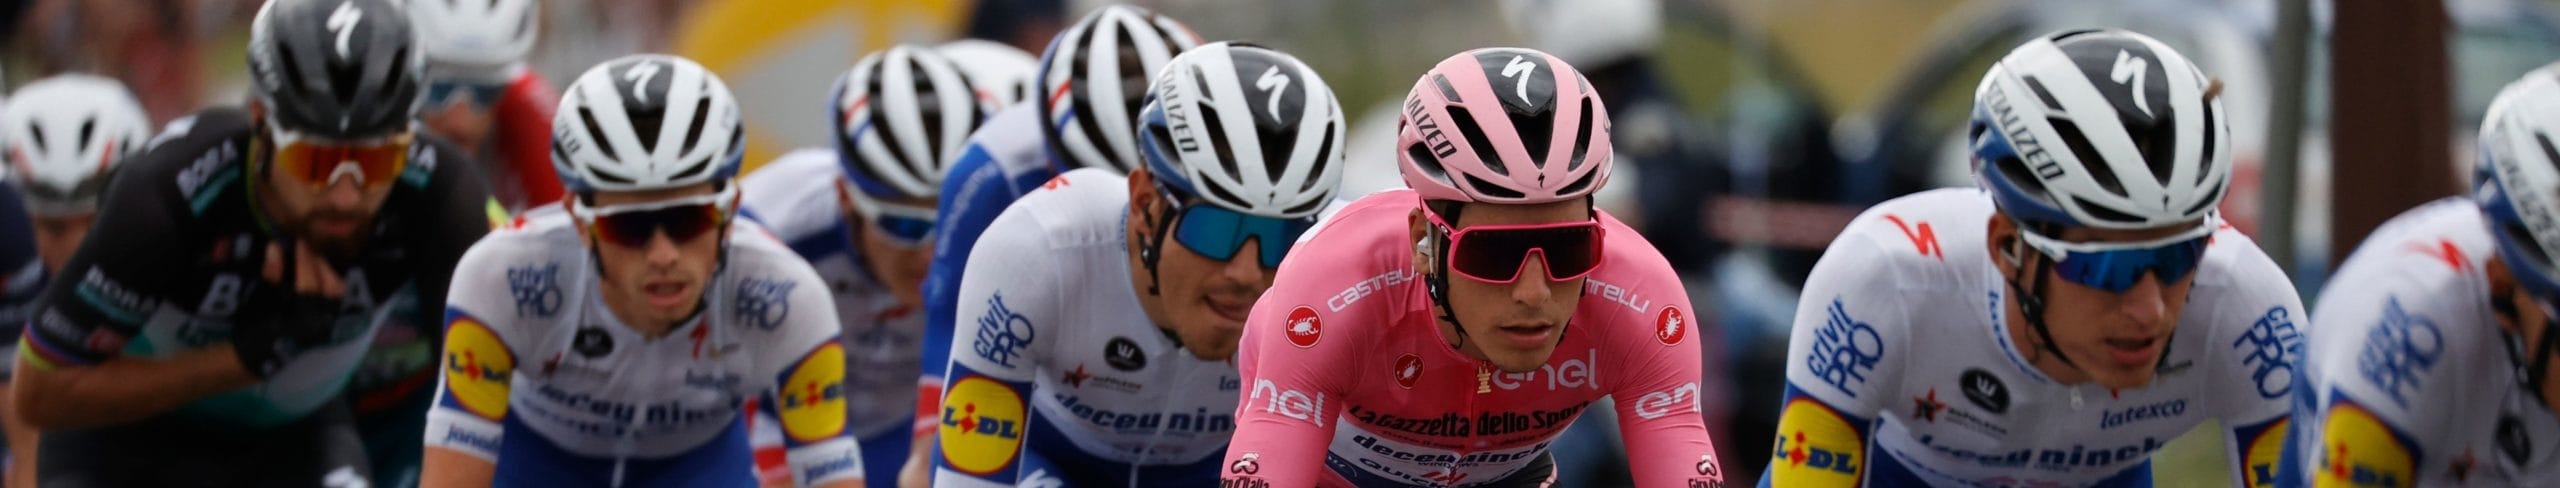 Giro d'Italia 2020, quote e favoriti per la tappa 5: big sotto esame